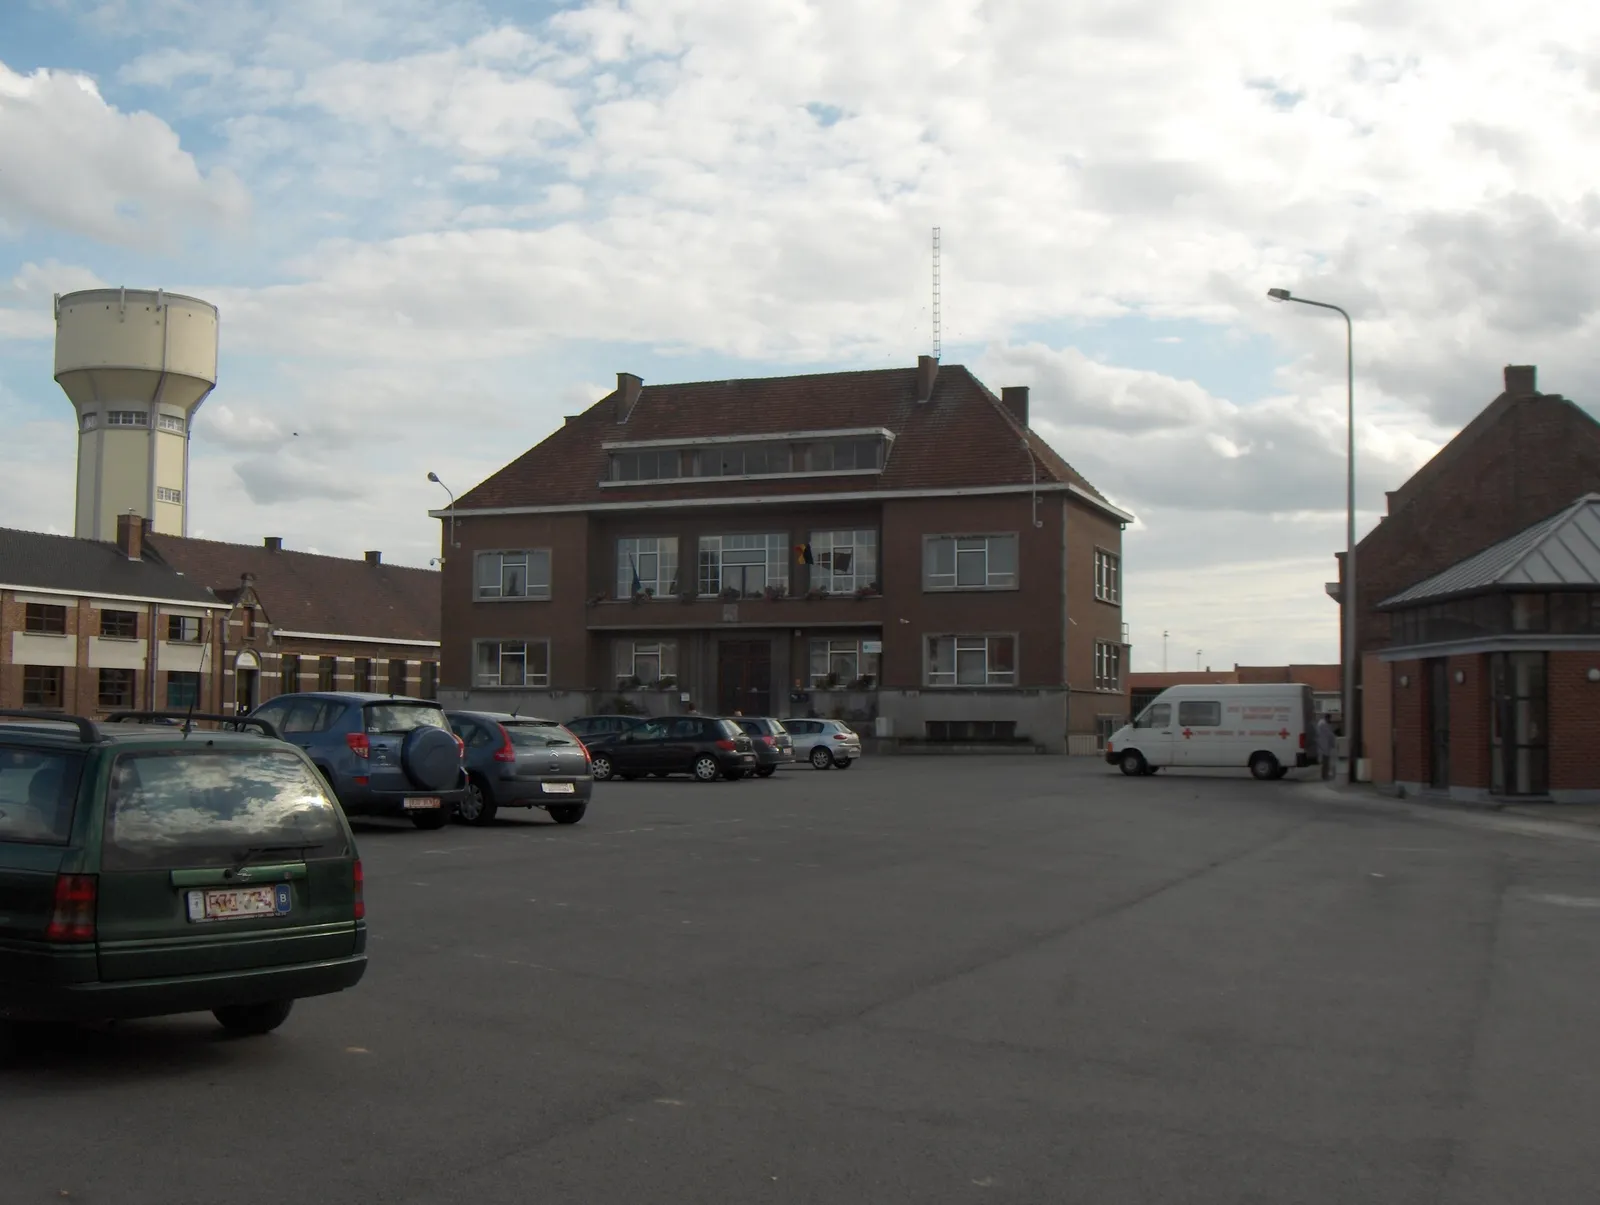 Photo showing: Basècles, Ortsteil der Gemeinde Beloeil im Hennegau (Belgien), Ortsmitte mit Asphaltparkplatz aus den 80er Jahren des 20. Jh.s, ehemaliges Rathaus im Hintergrund, heute örtliches Sozialamt.